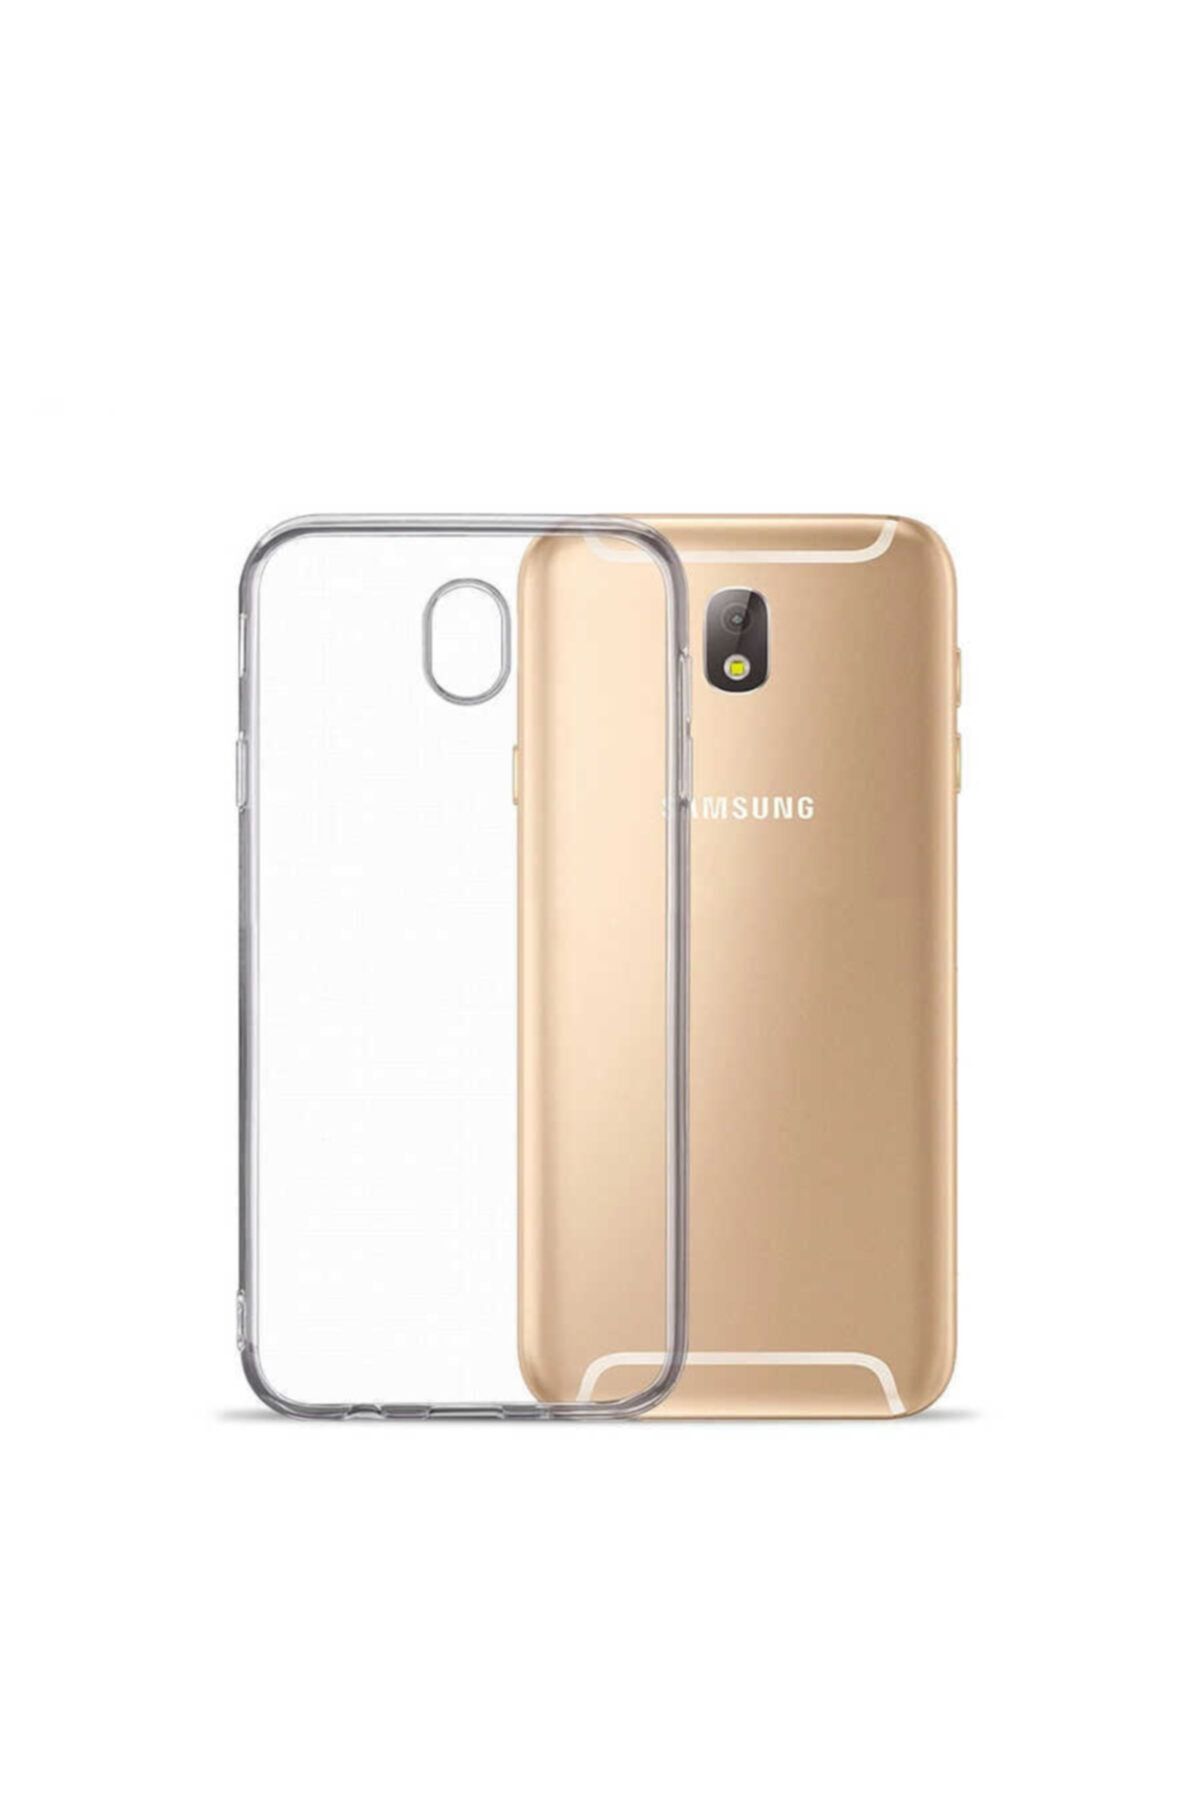 Fibaks Samsung Galaxy J730 Pro Uyumlu Kılıf Yumuşak Şeffaf Süper Silikon